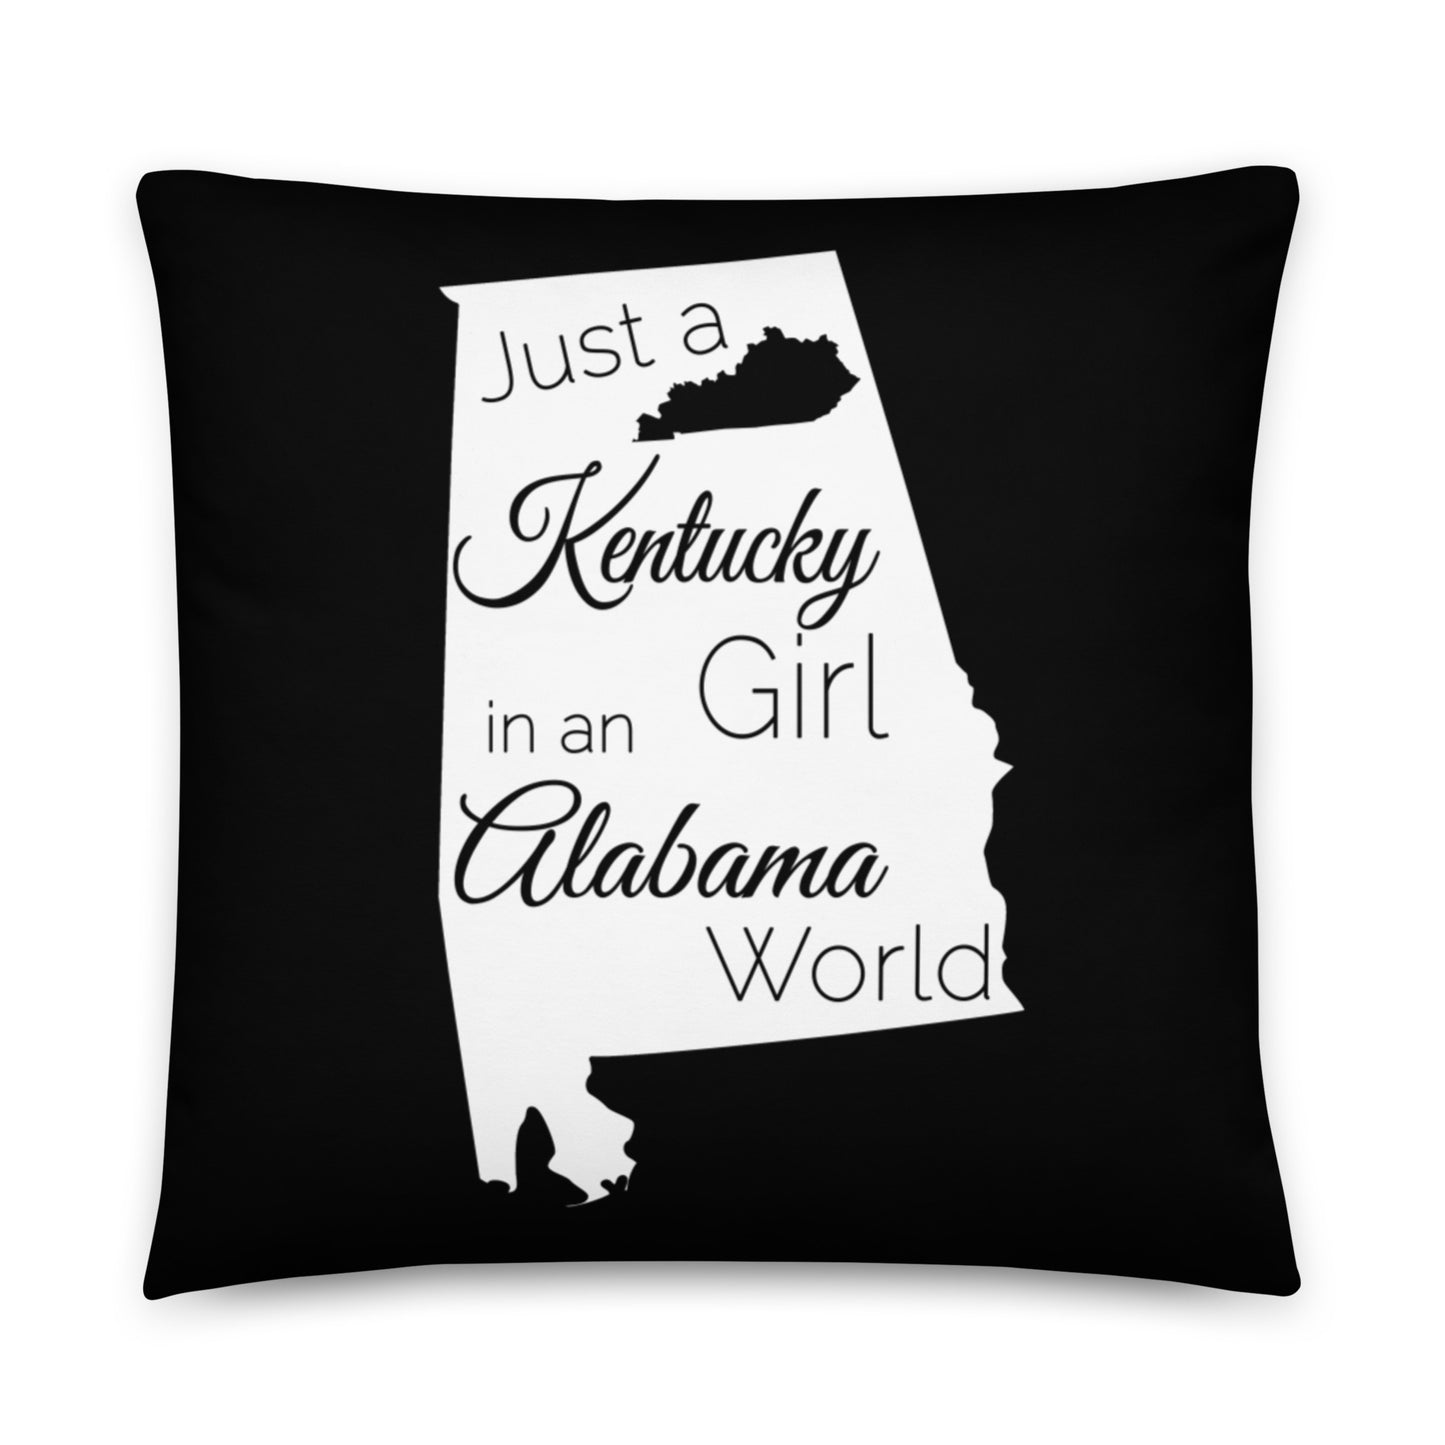 Just a Kentucky Girl in an Alabama World Basic Pillow